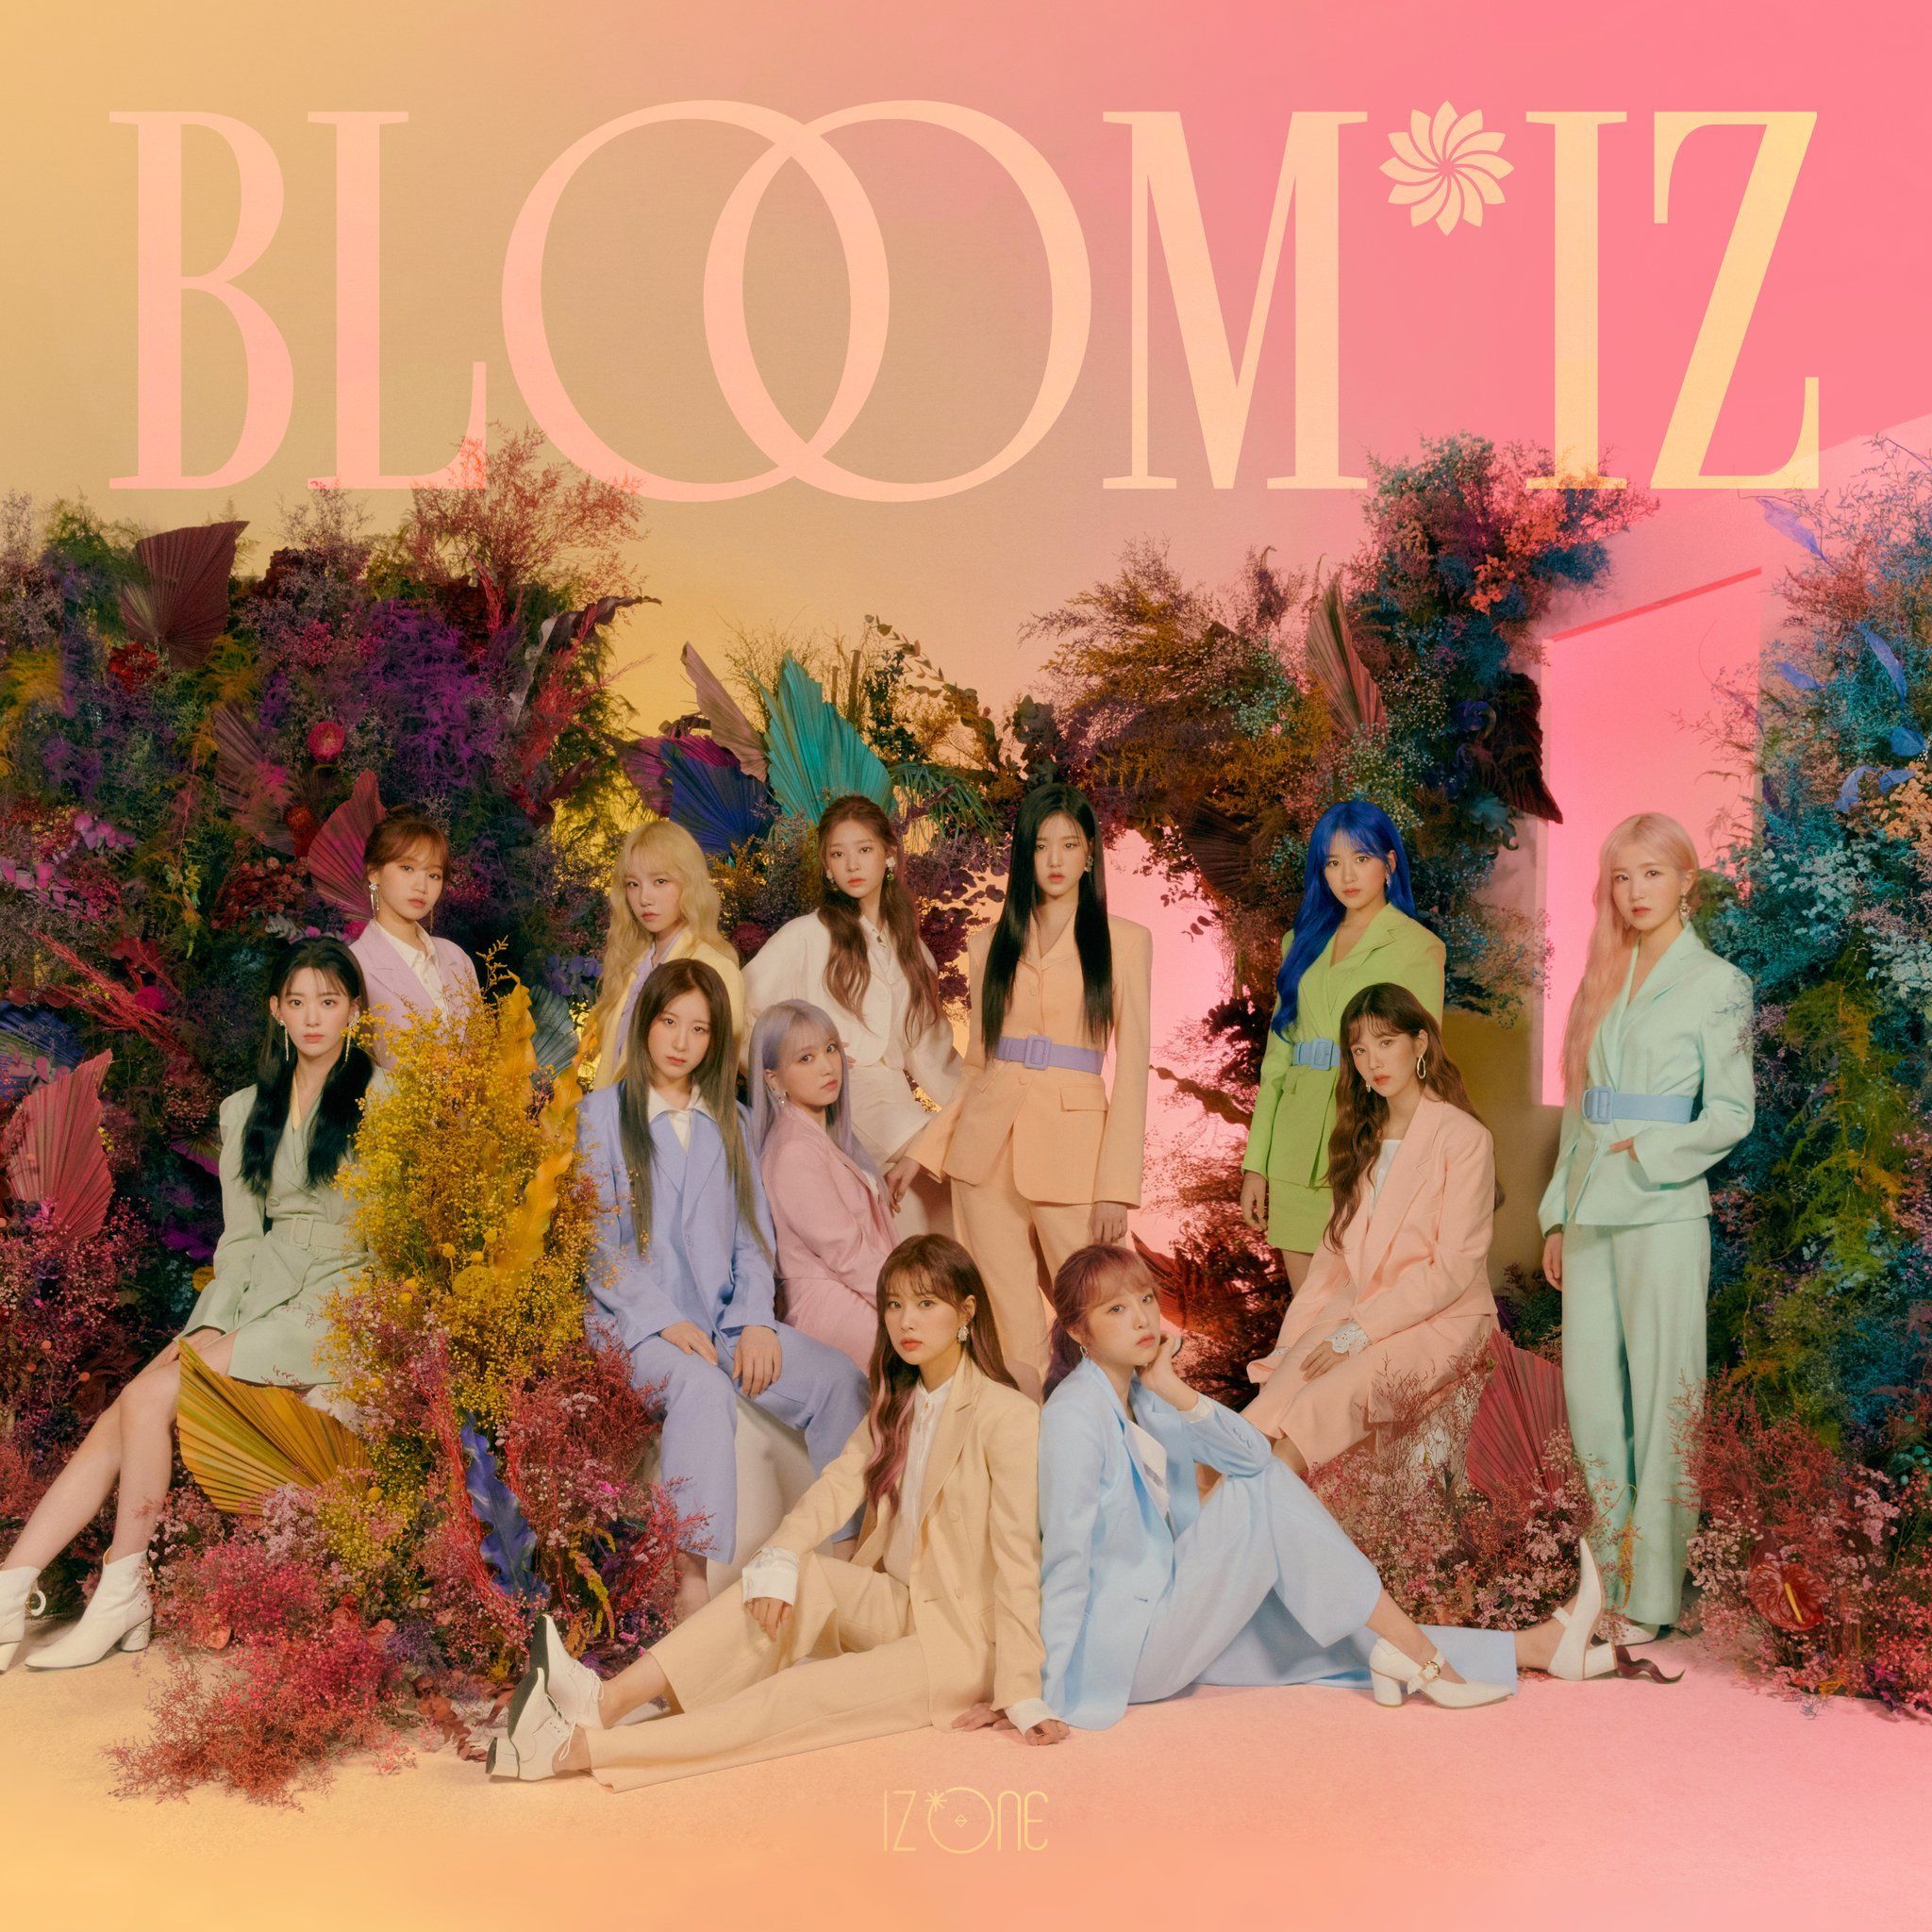 official_IZONE on. Album covers, Bloom, Album